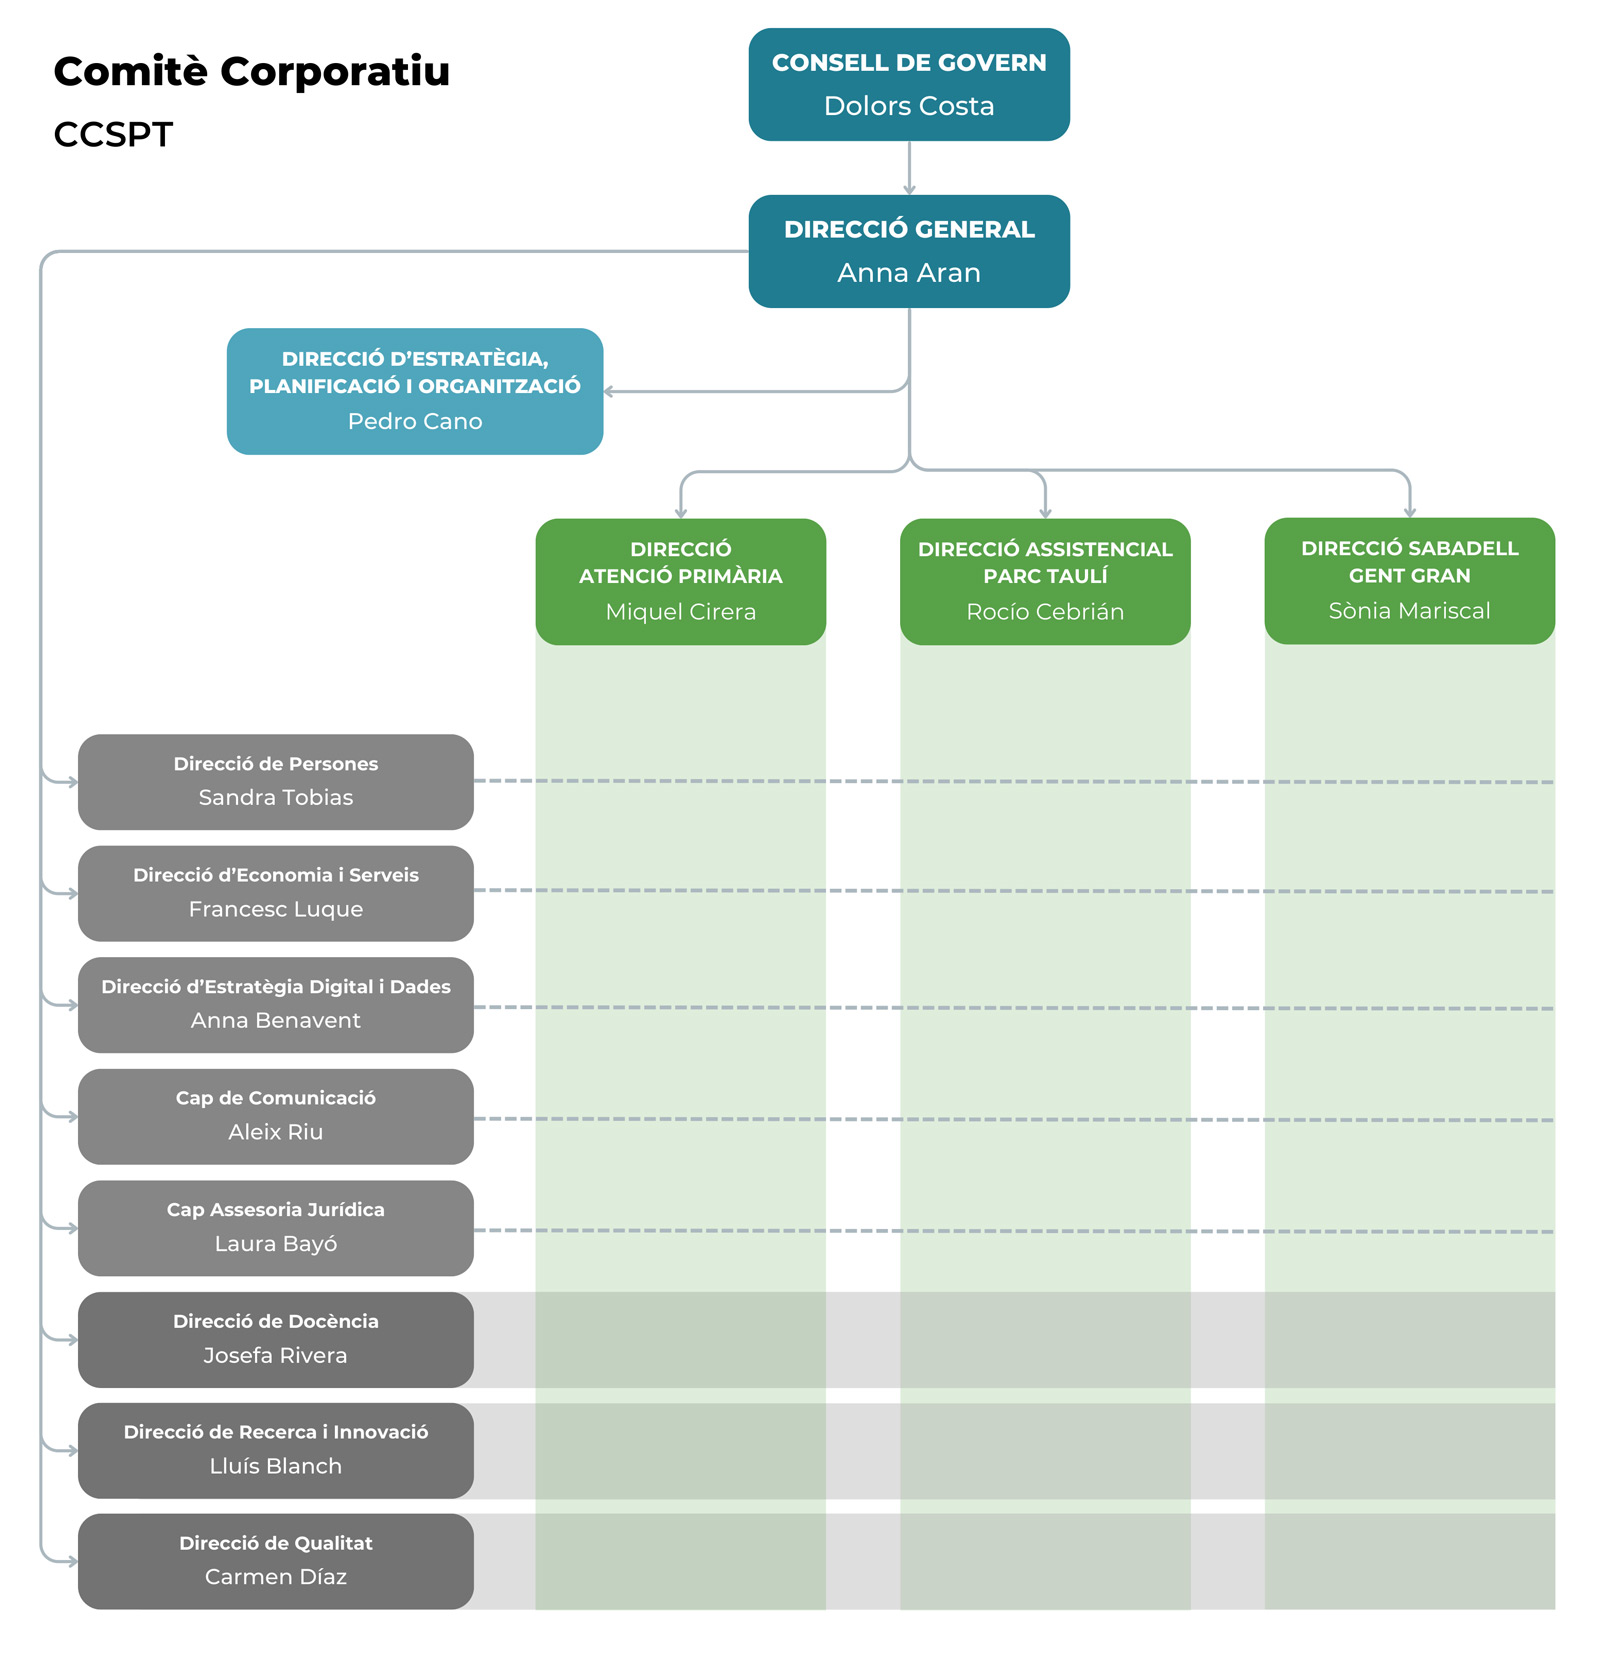 Corporate organizational chart